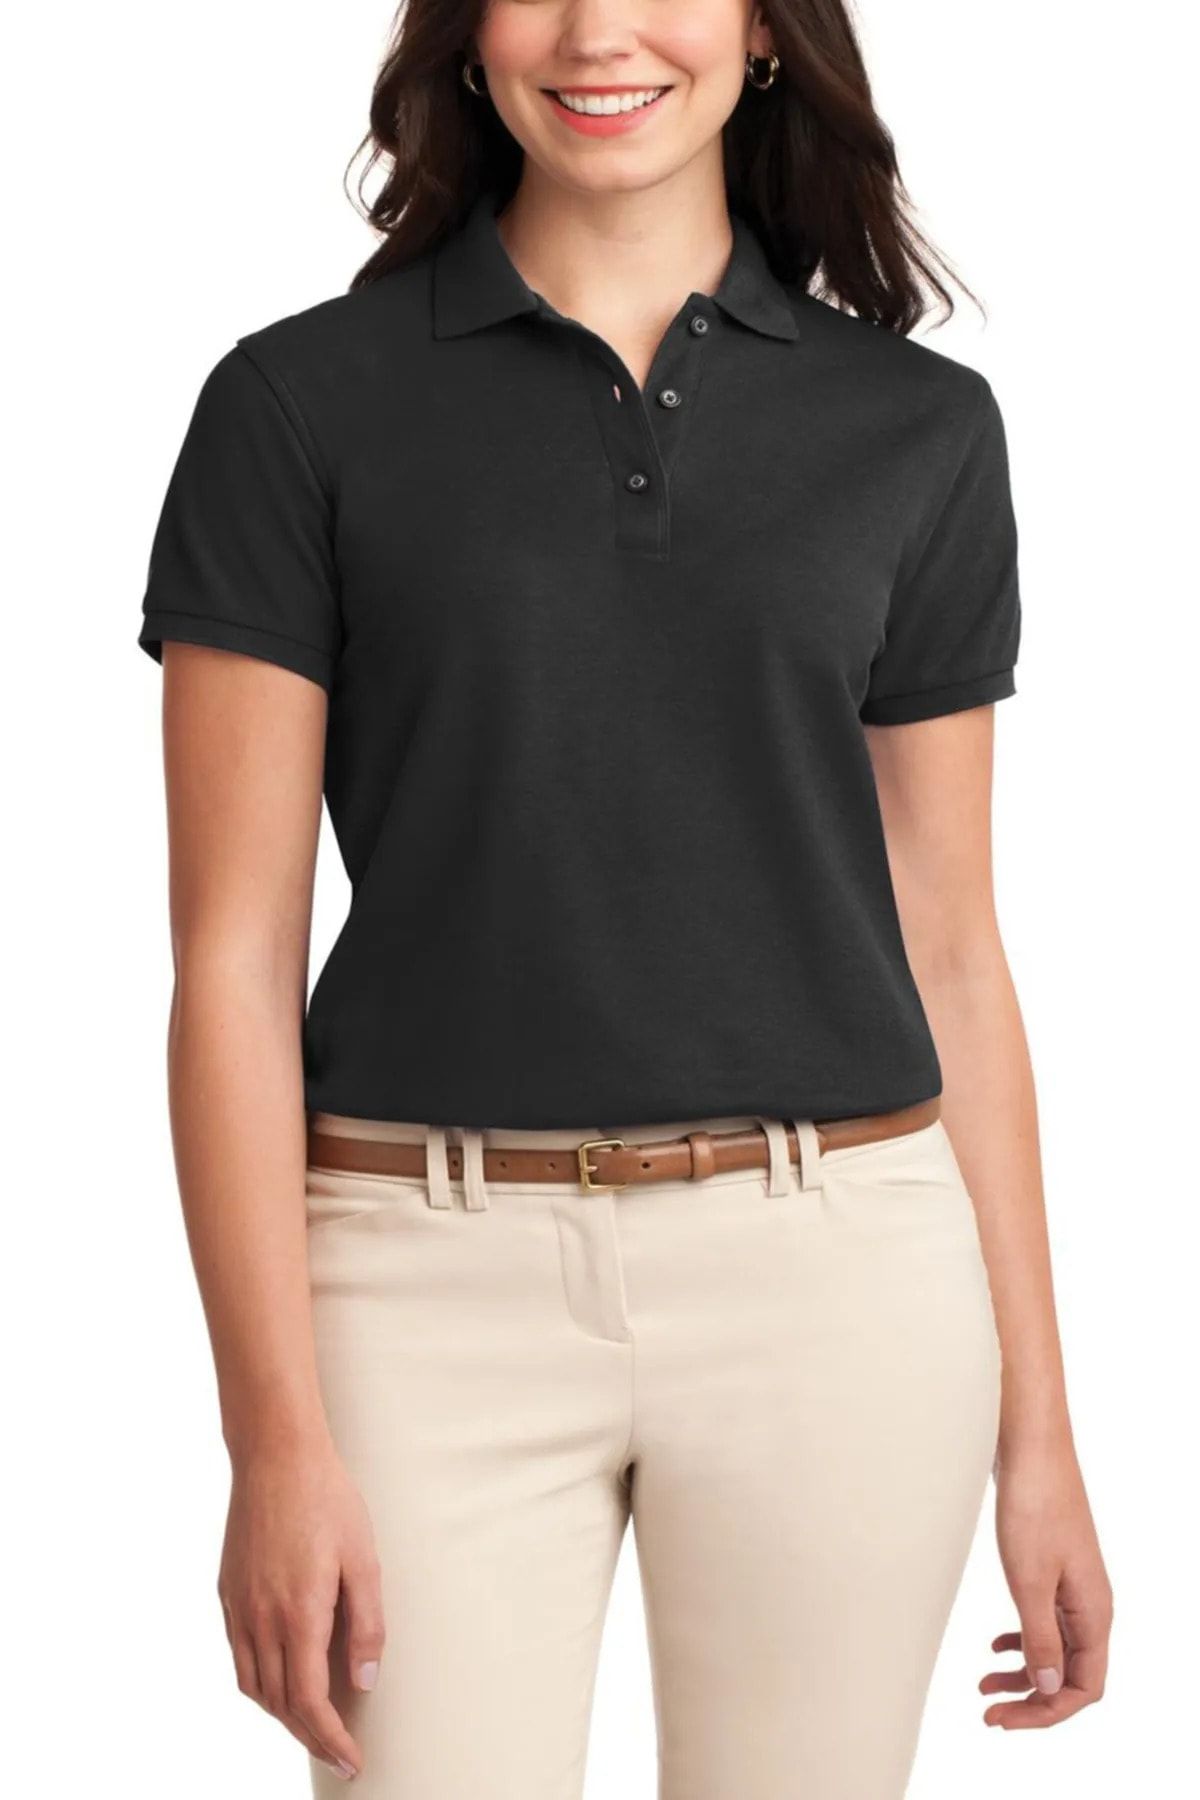 EKZMODA Siyah Düz Renk Kadın Polo Yakalı T-shirt - Kadin Polo Yaka T-shirt